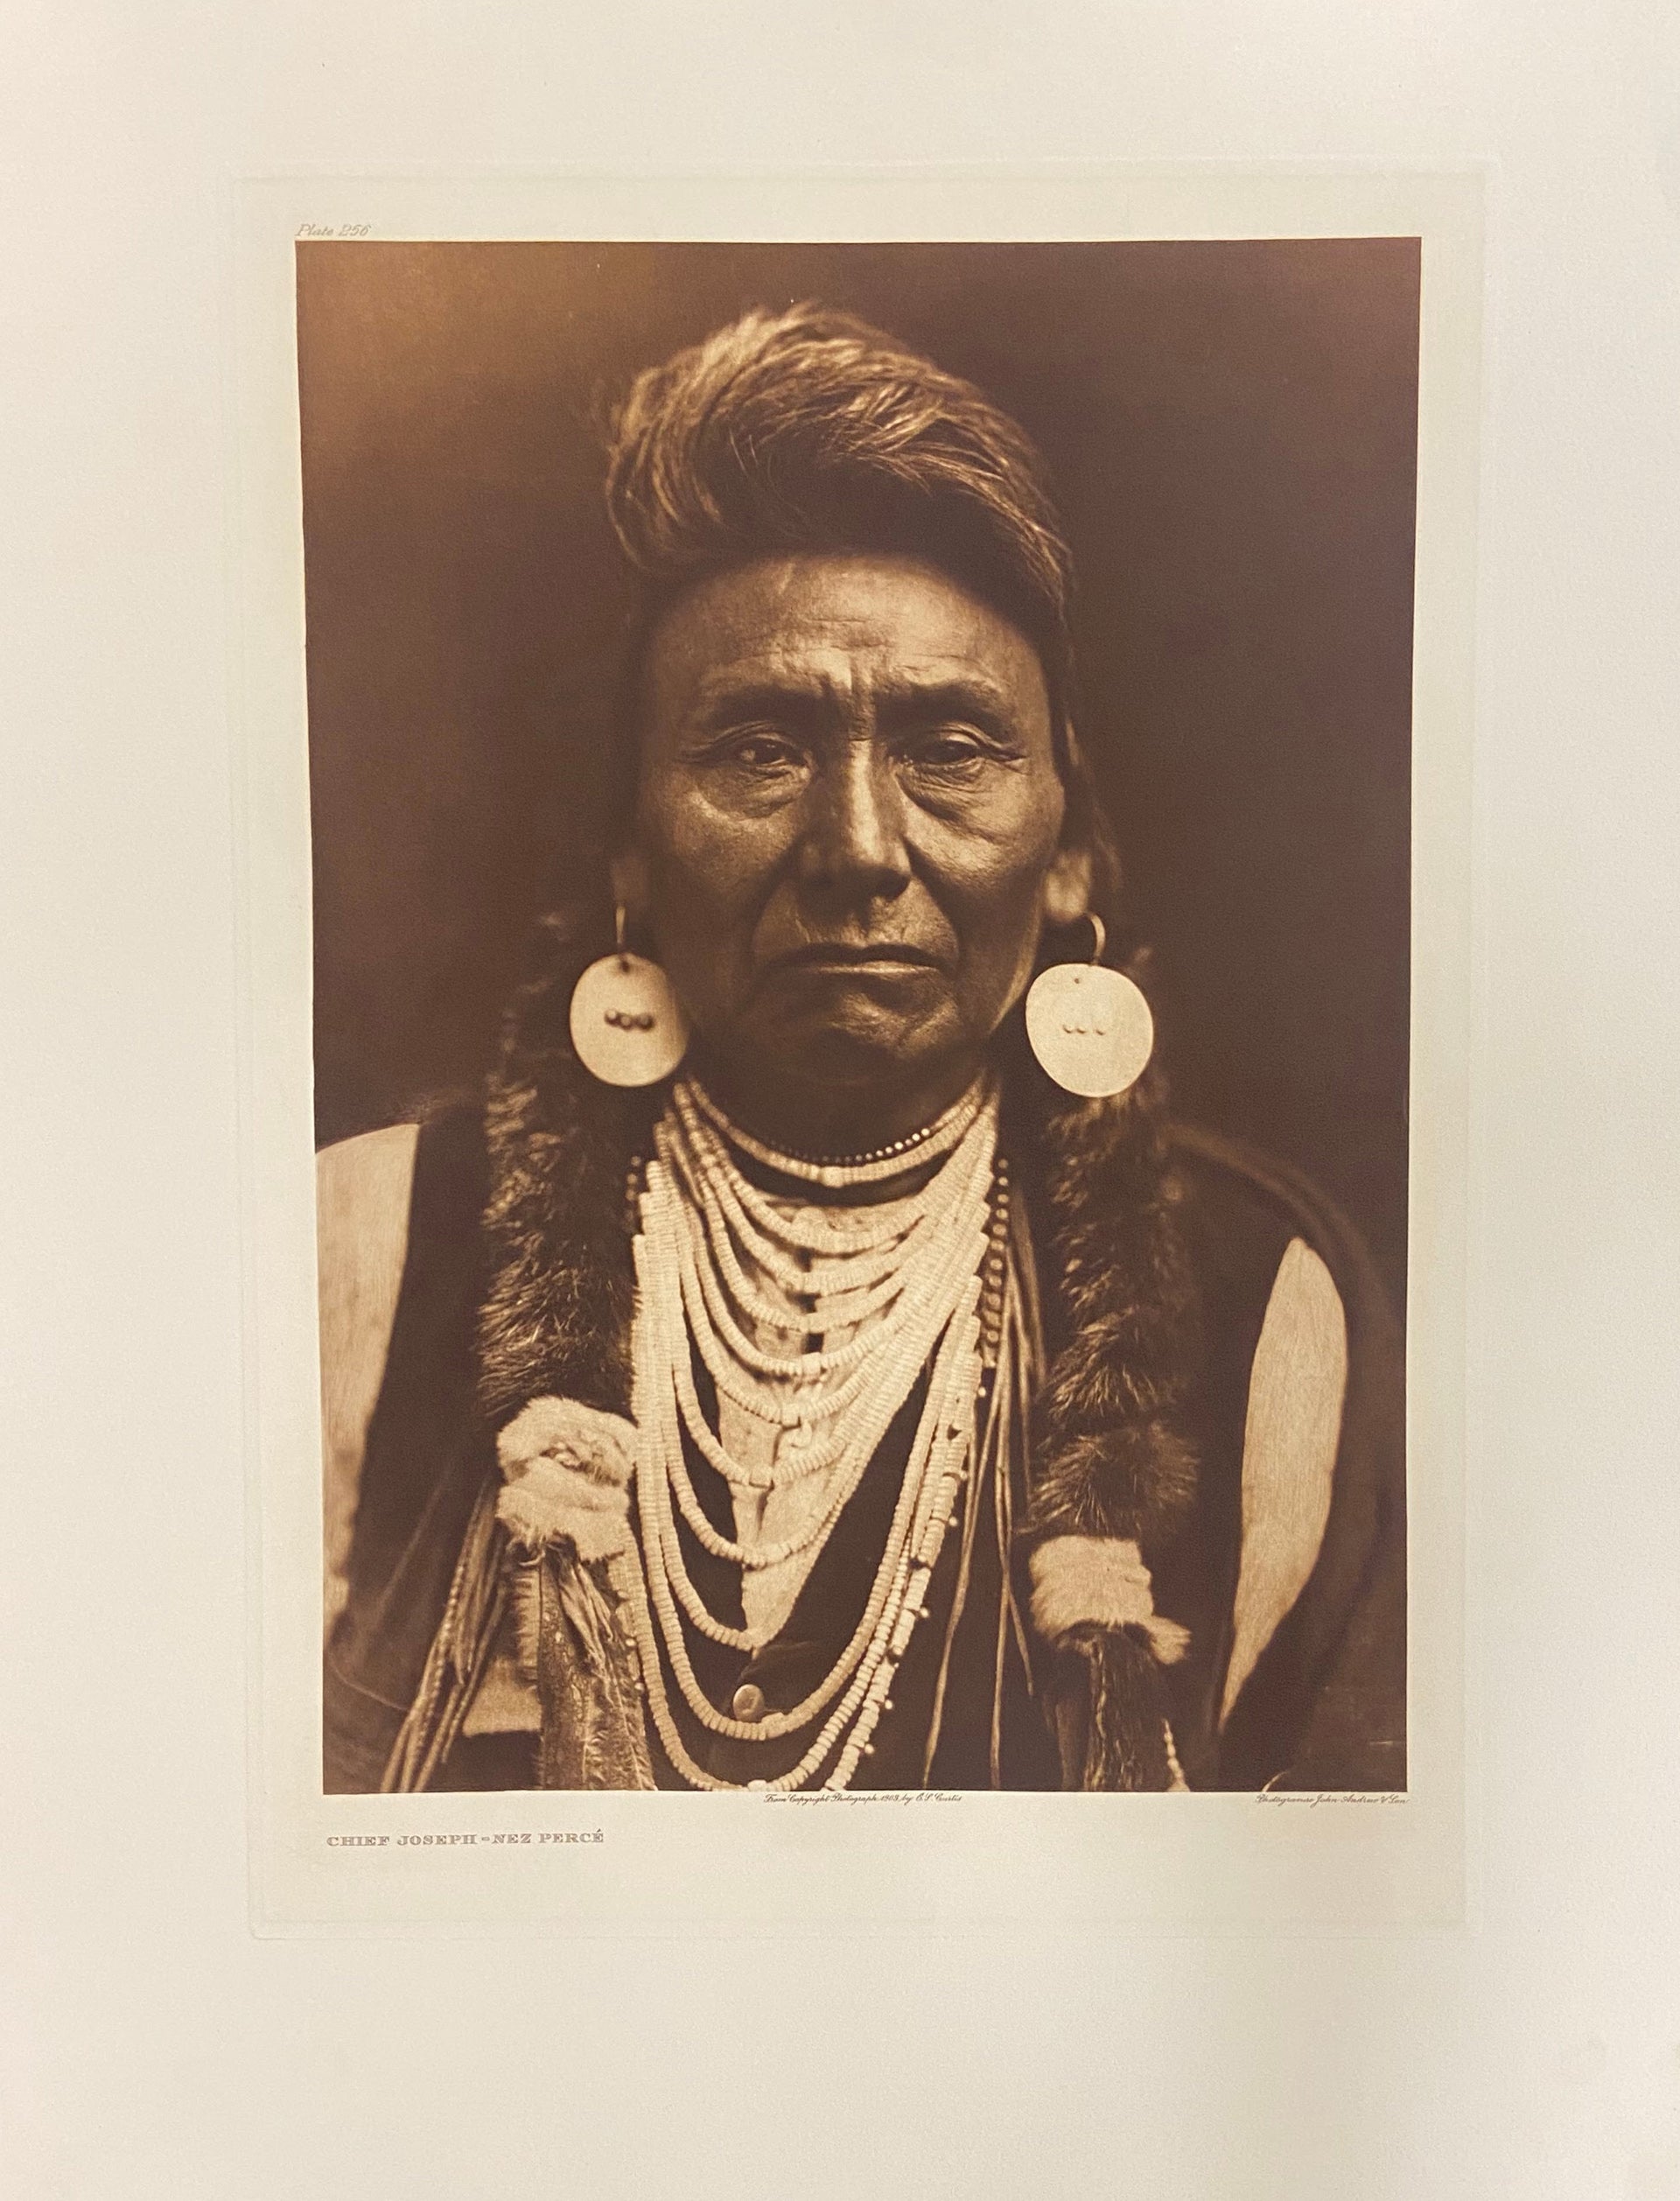 Chief Joseph - Nez Percé